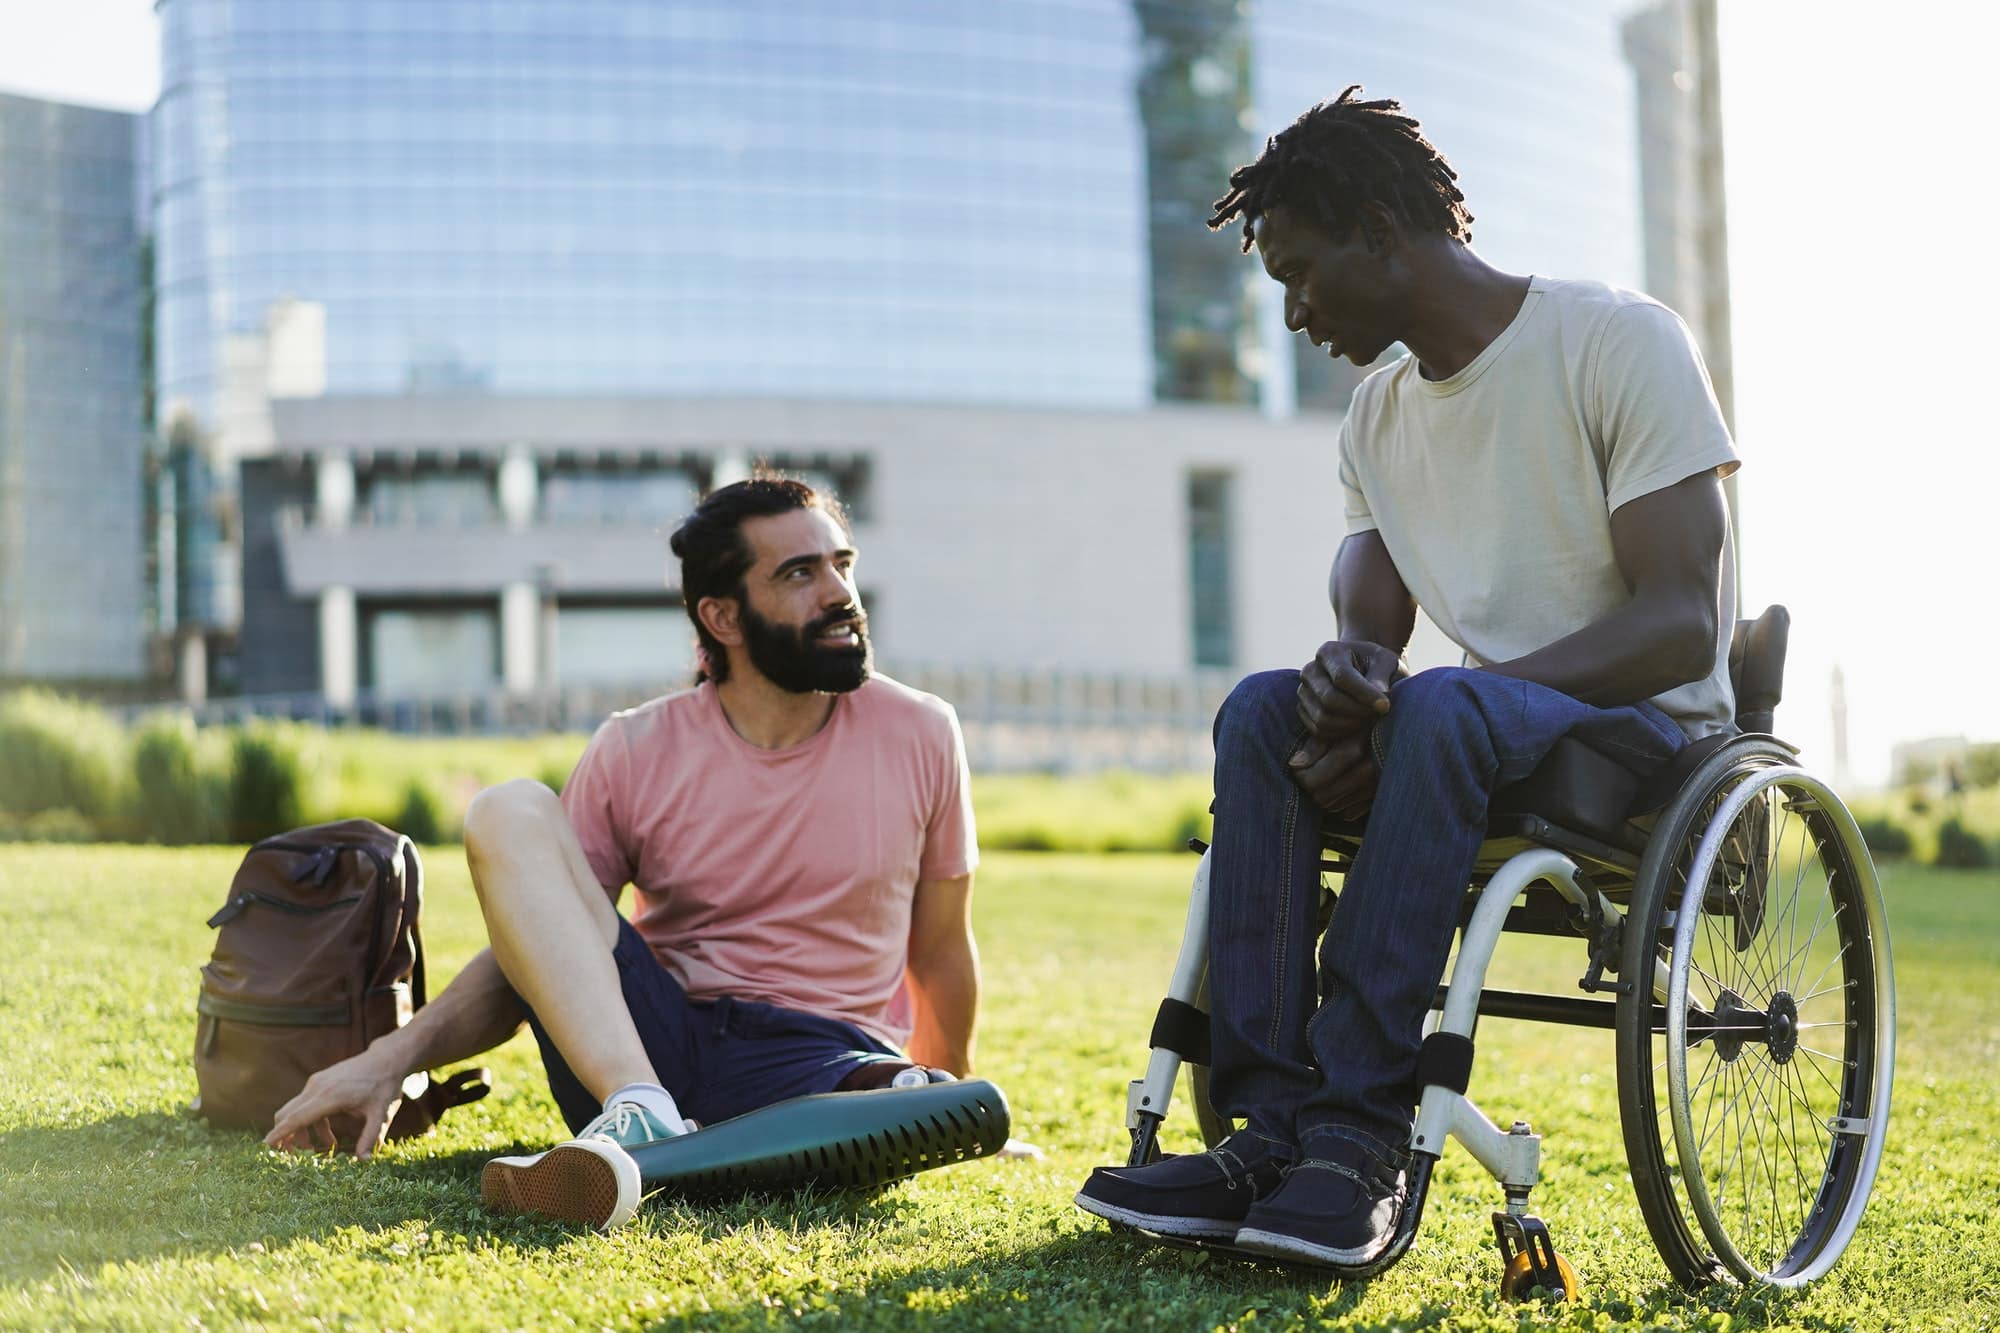 Des infos handicap (MDPH) : Des ressources cruciales pour les personnes handicapées